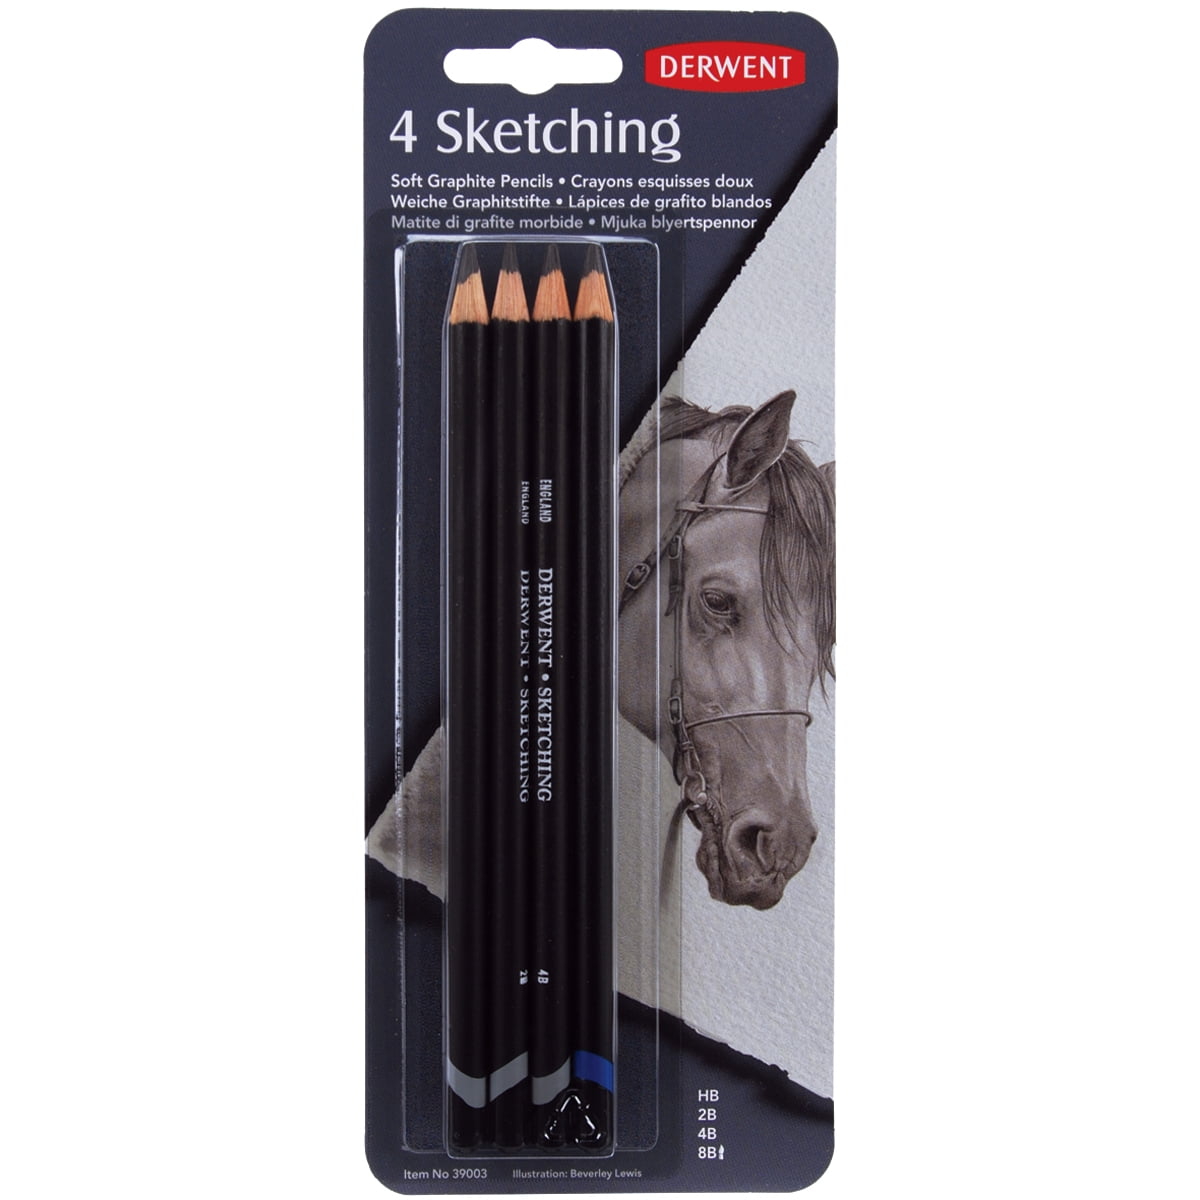 Derwent Sketching Pencils 3 HB 4B 8B Your Choice Light Med Dark Wash